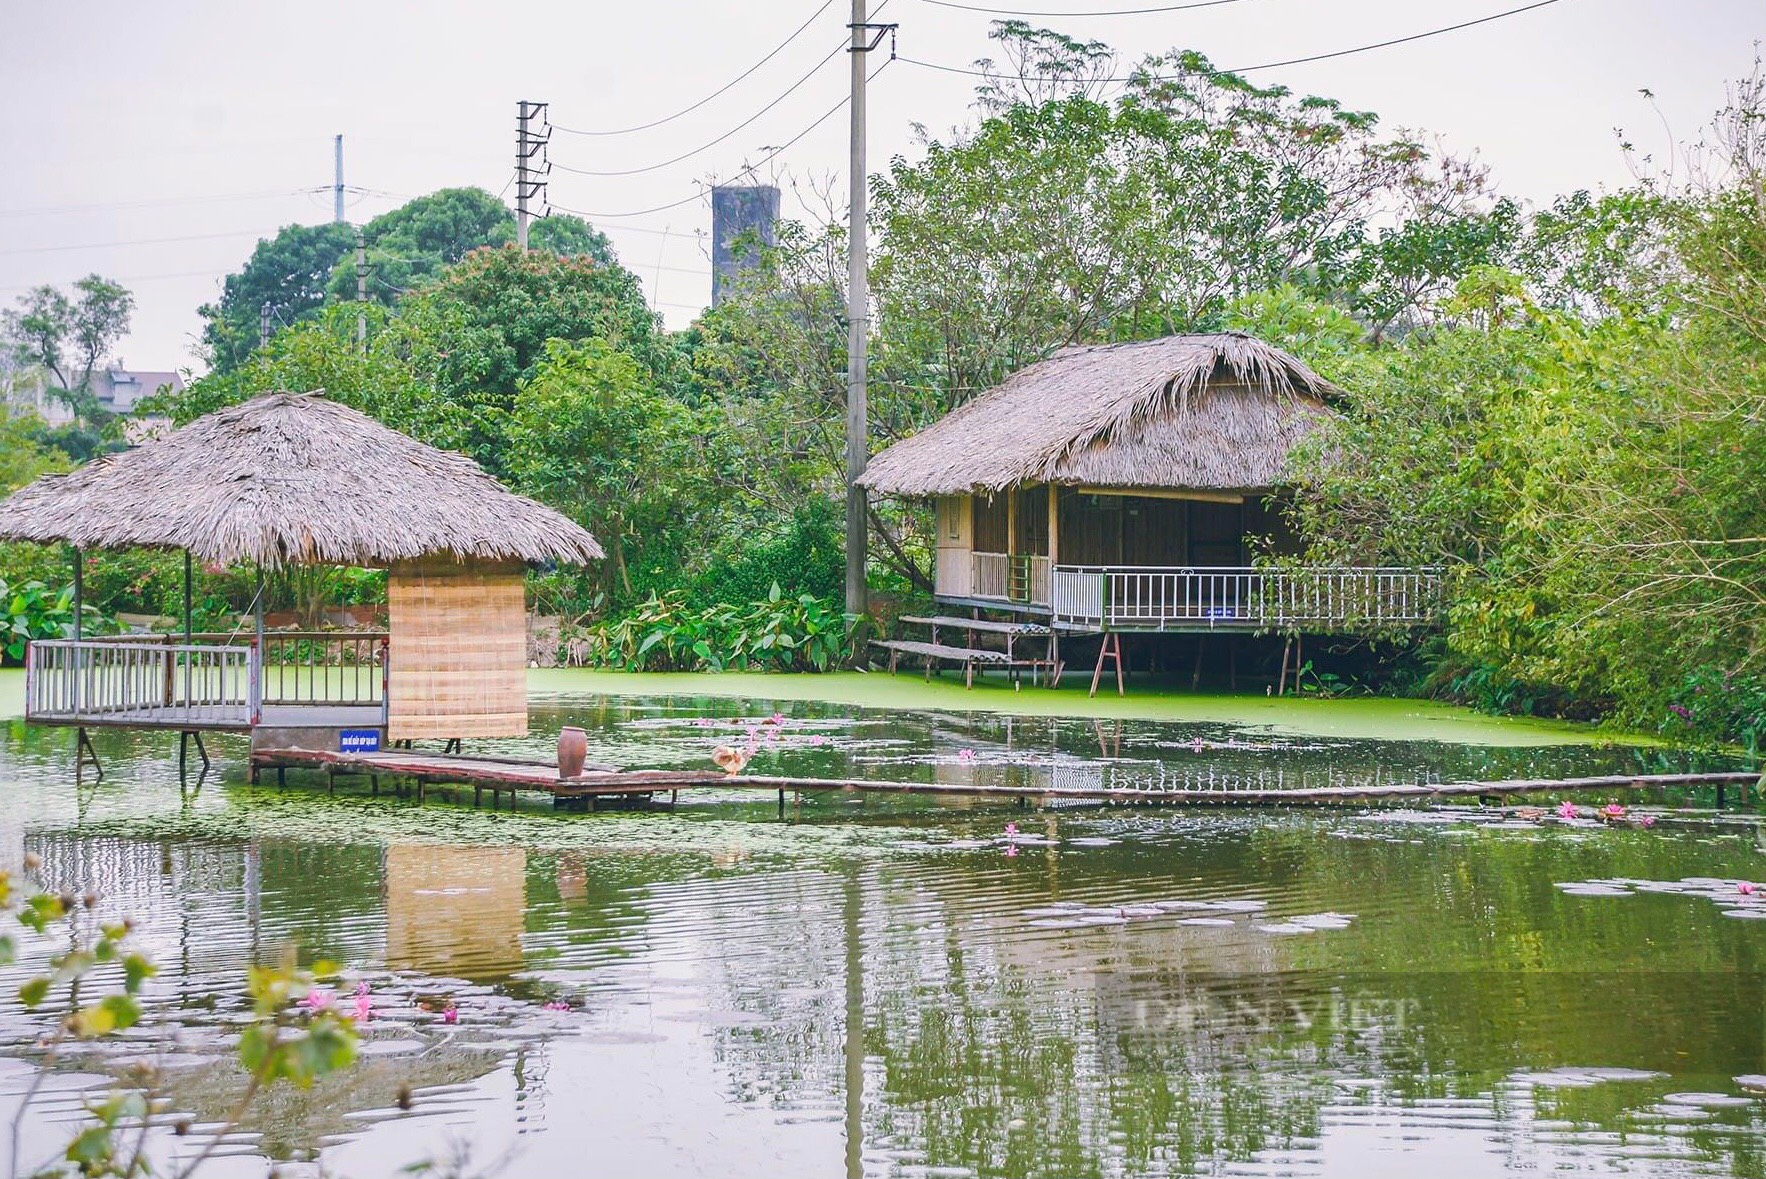 Khám phá công viên thực cảnh Việt Nam:&quot;Ốc đảo xanh&quot; giữa lòng Hà Nội - Ảnh 12.